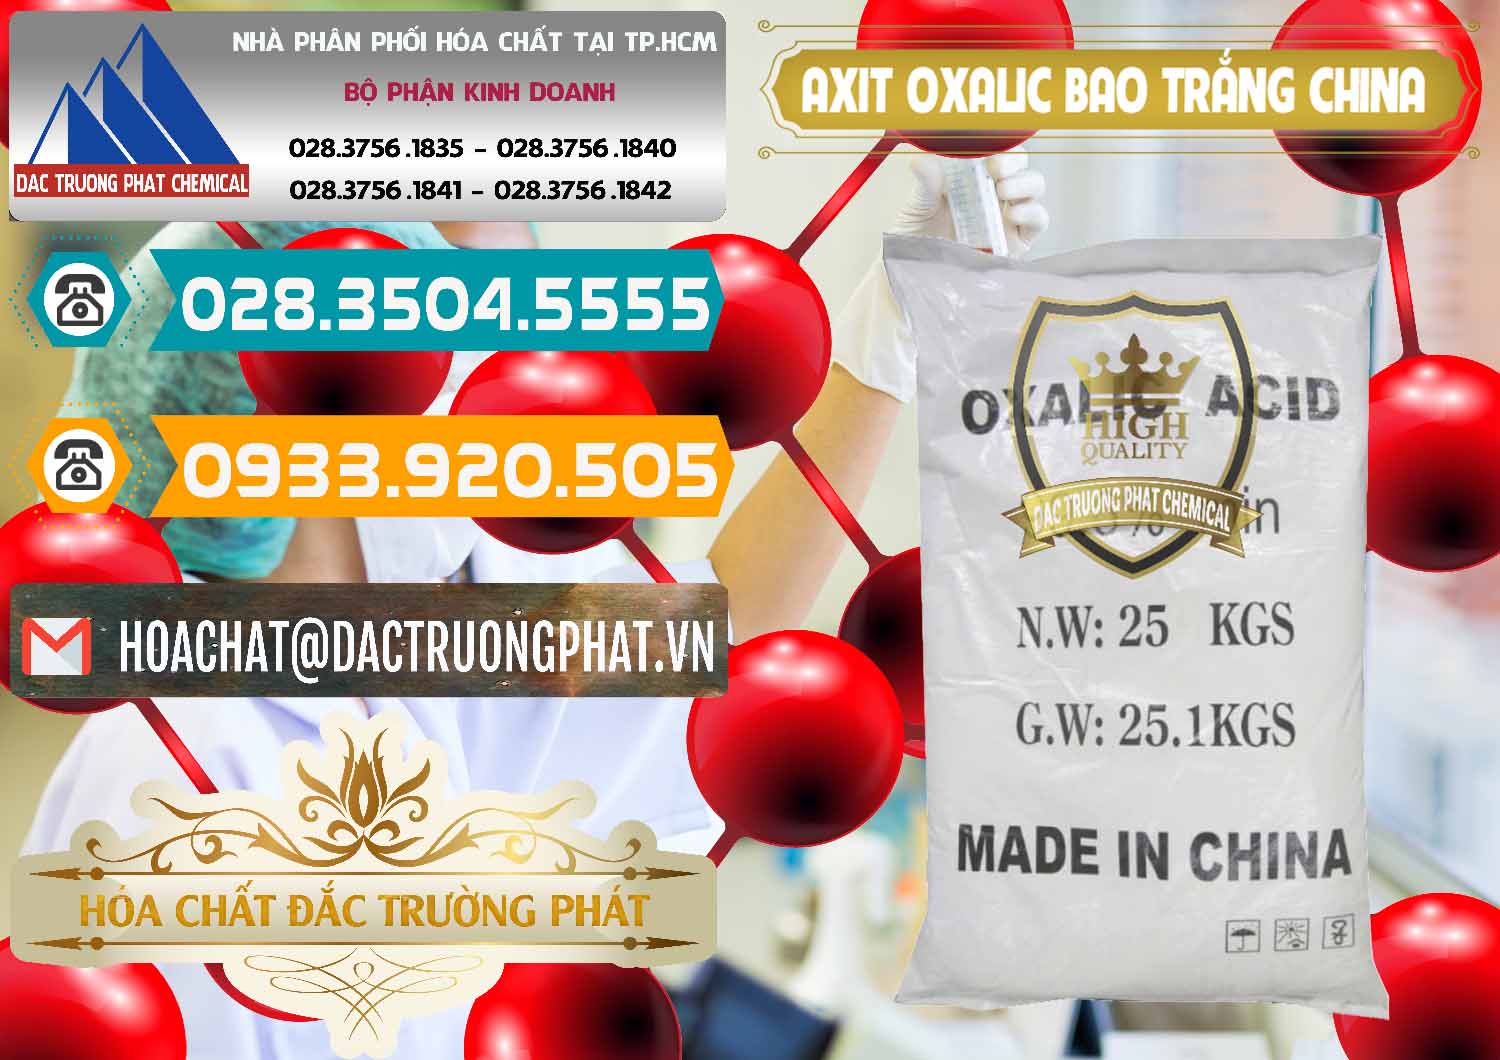 Nơi chuyên cung ứng & bán Acid Oxalic – Axit Oxalic 99.6% Bao Trắng Trung Quốc China - 0270 - Cty cung cấp - phân phối hóa chất tại TP.HCM - congtyhoachat.vn